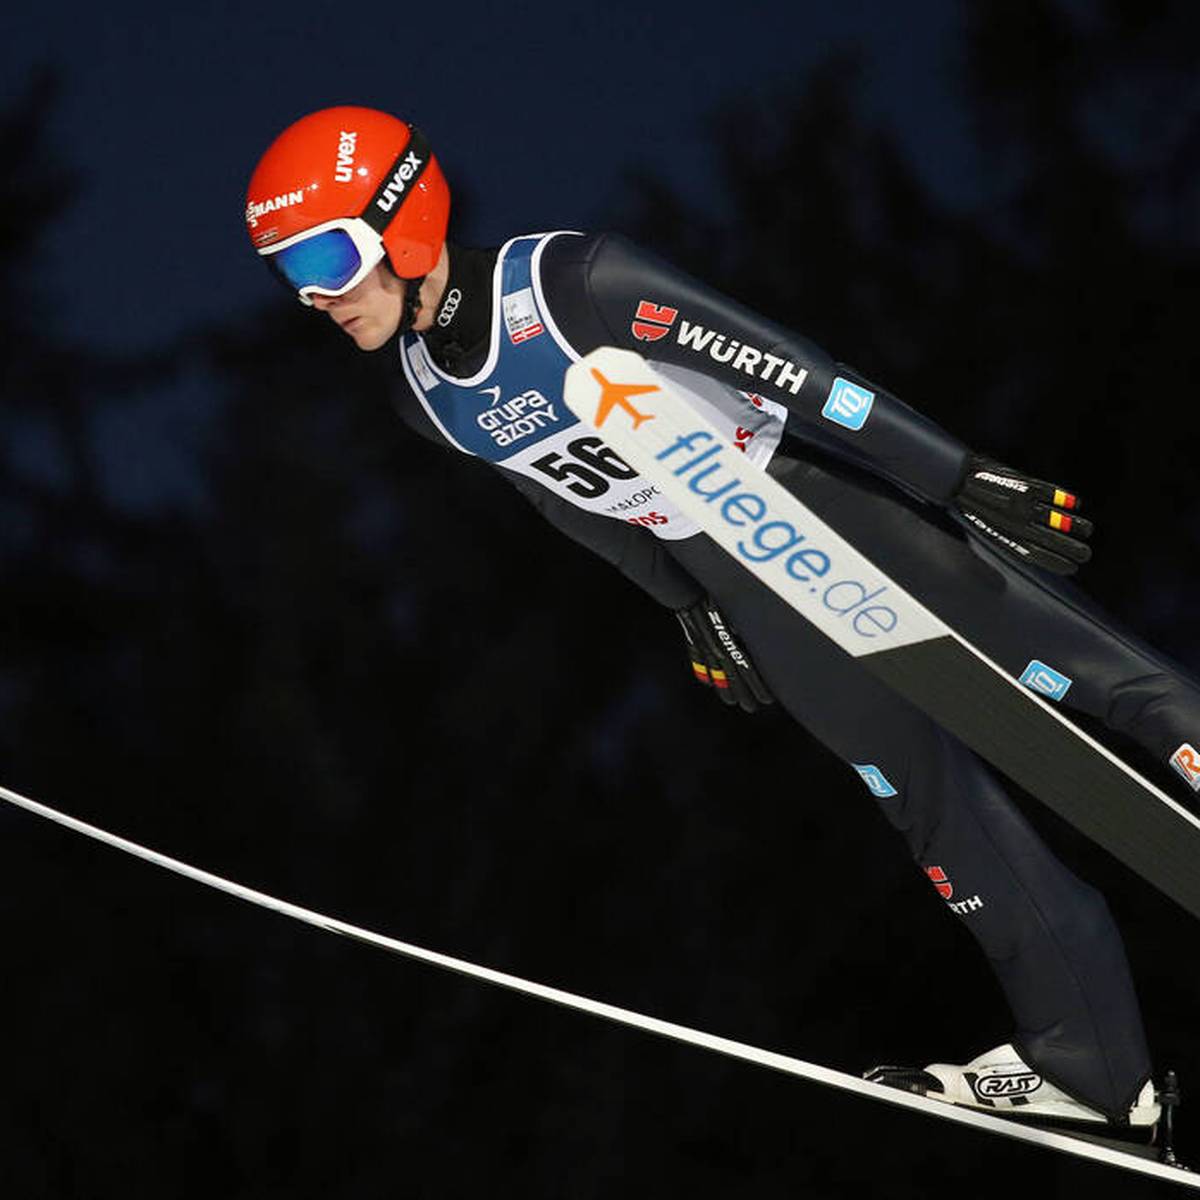 Die Olympischen Spiele stehen vor der Tür. Zuvor treten die Skispringer zum Weltcup in Willingen an. Es geht um einen Mixed-Teamwettbewerb sowie zwei Einzelspringen.